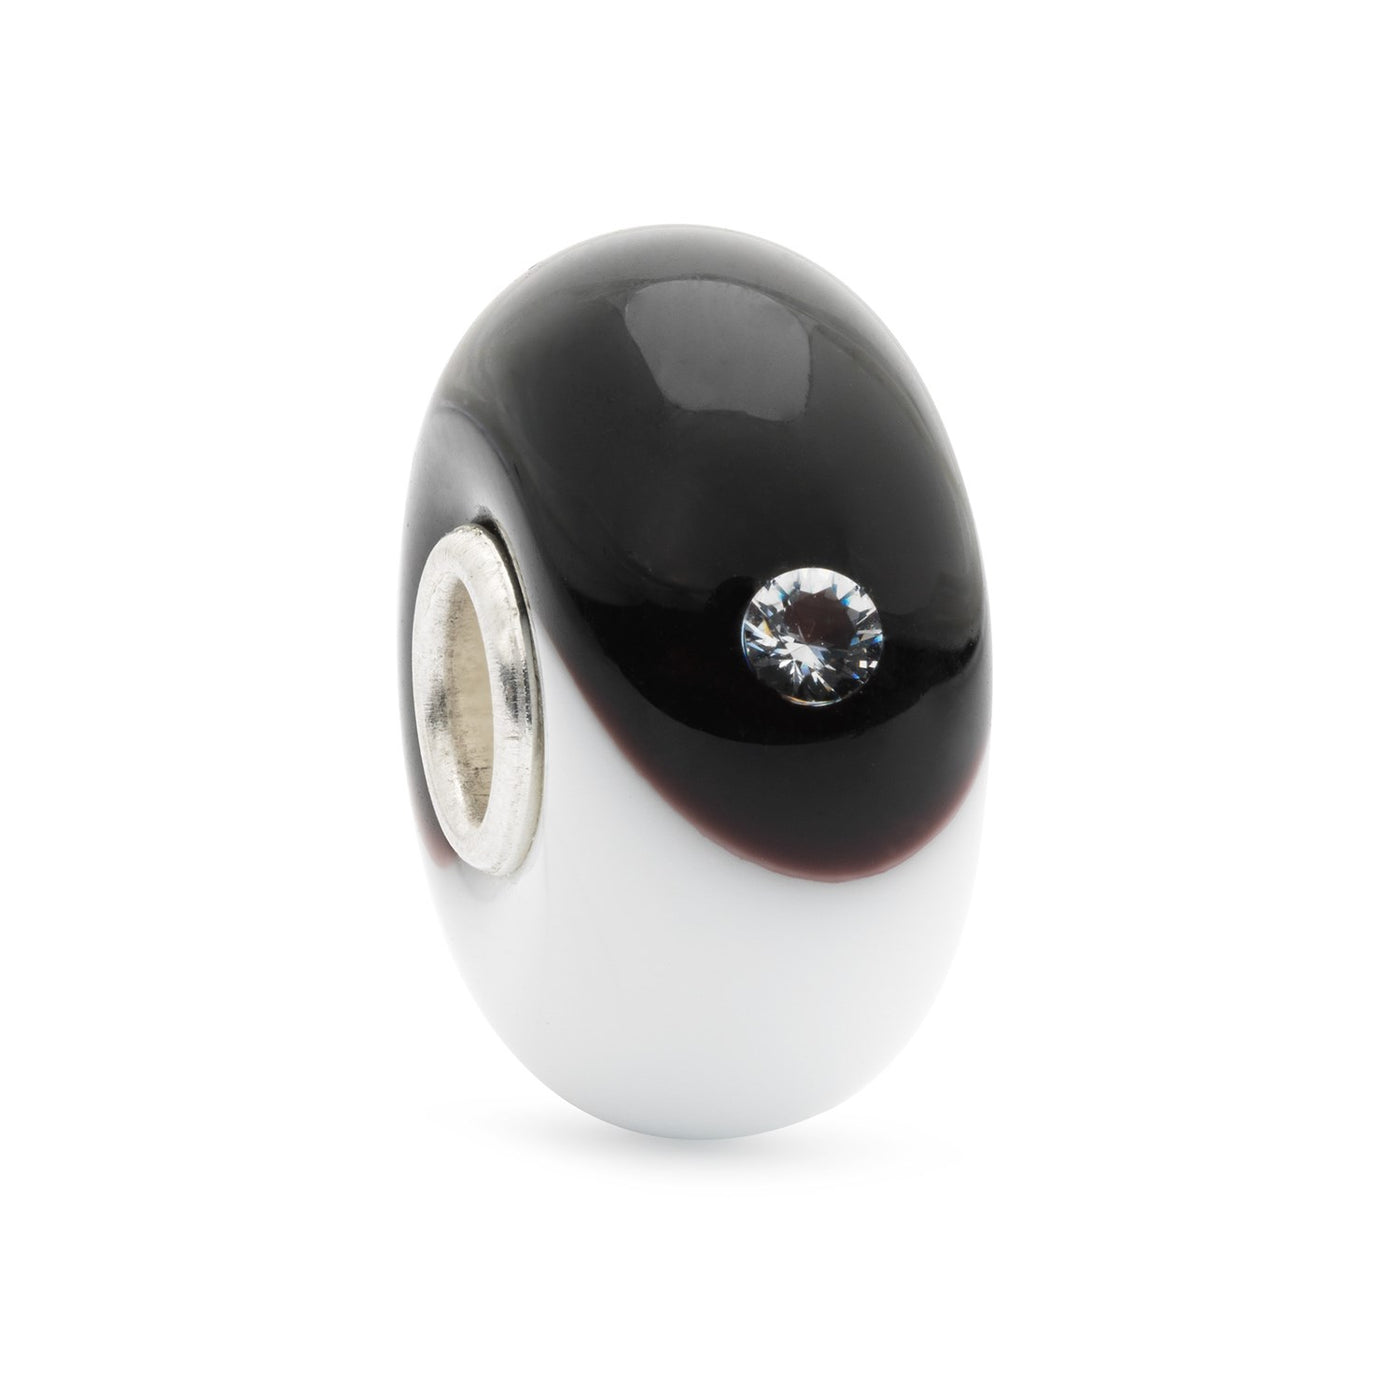 Perfekt Balance kugle er lavet af glas og har to indlejrede cirkler i hvidt og sort, der symboliserer balance og harmoni, og to zirkoner på hver side.